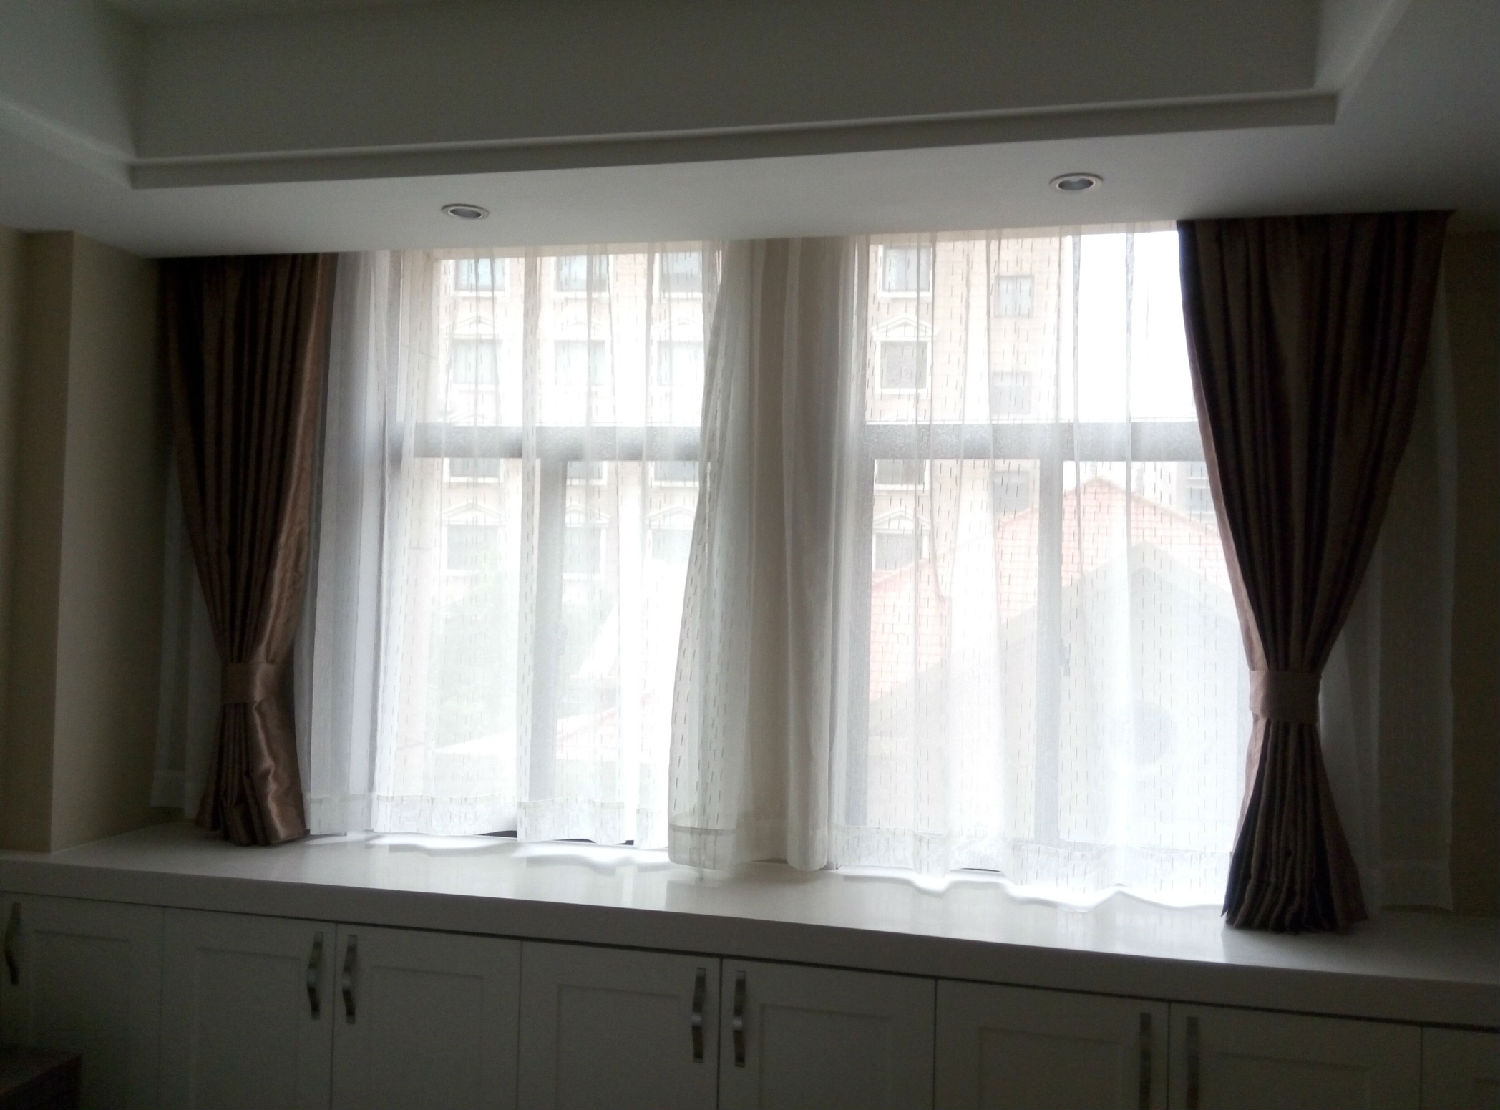 上海皇室堡酒店公寓窗帘工程